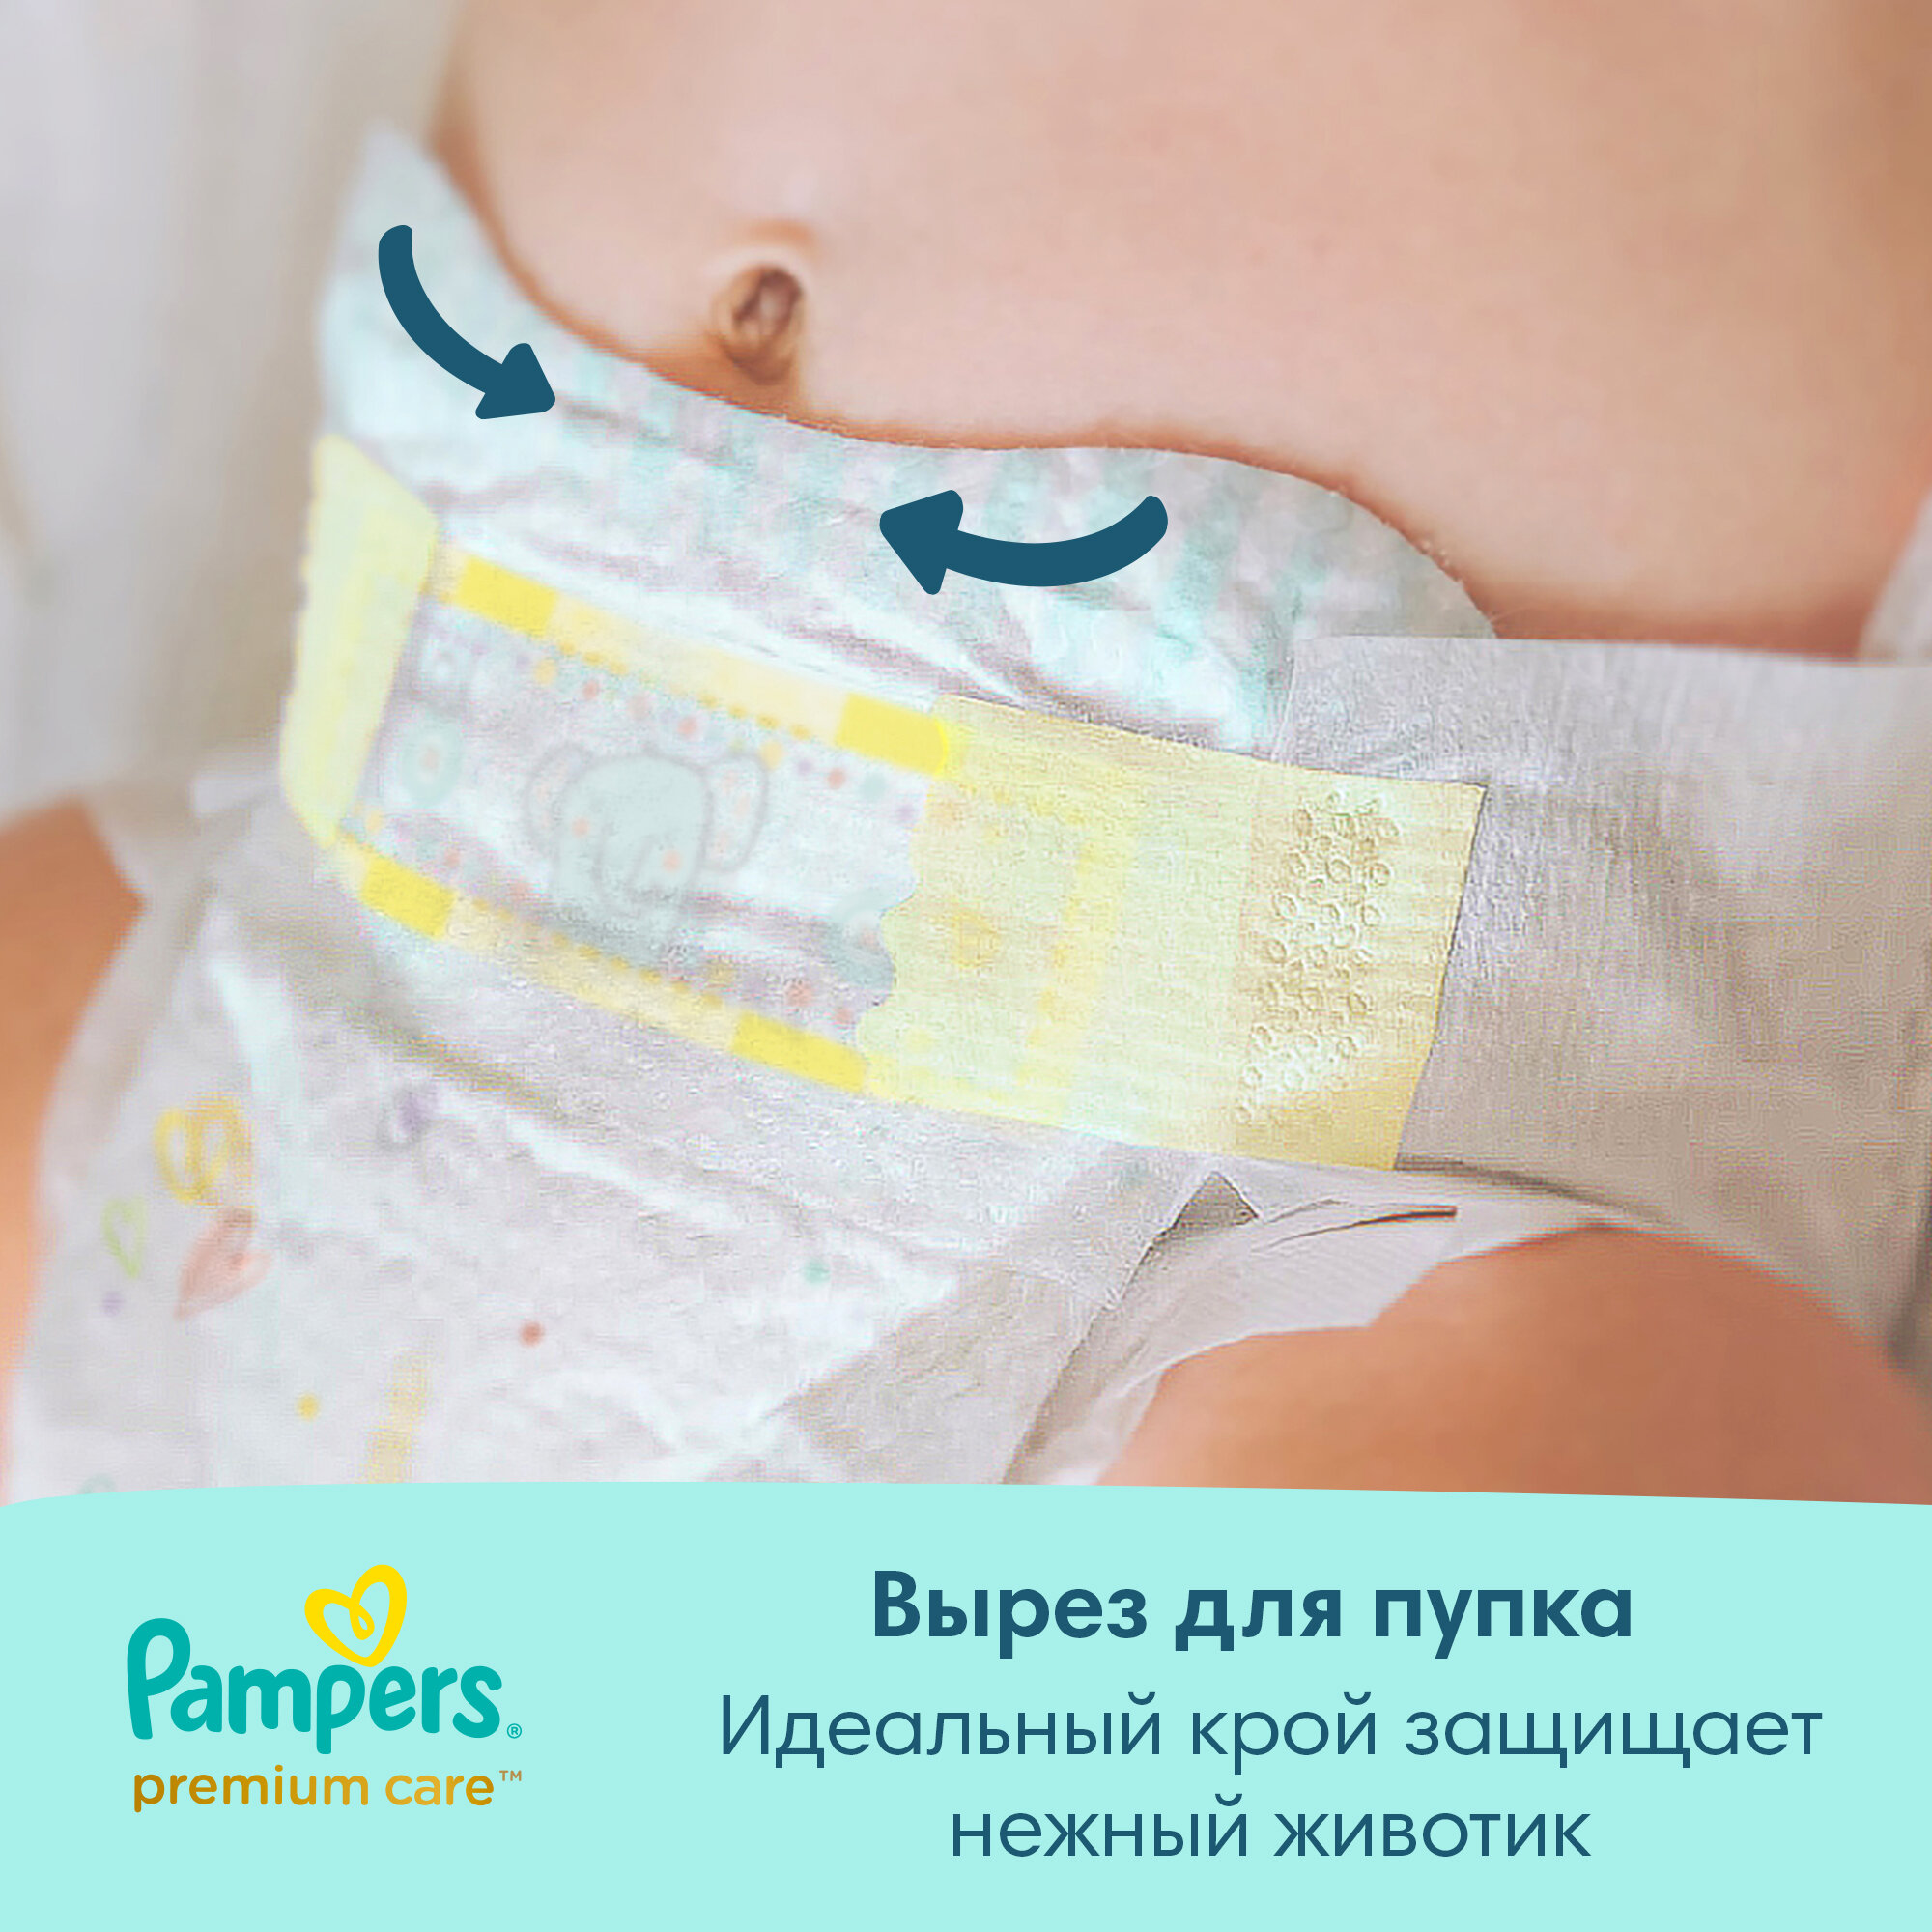 Подгузники Pampers Premium Care для малышей 6-10 кг, 3 размер, 74 шт